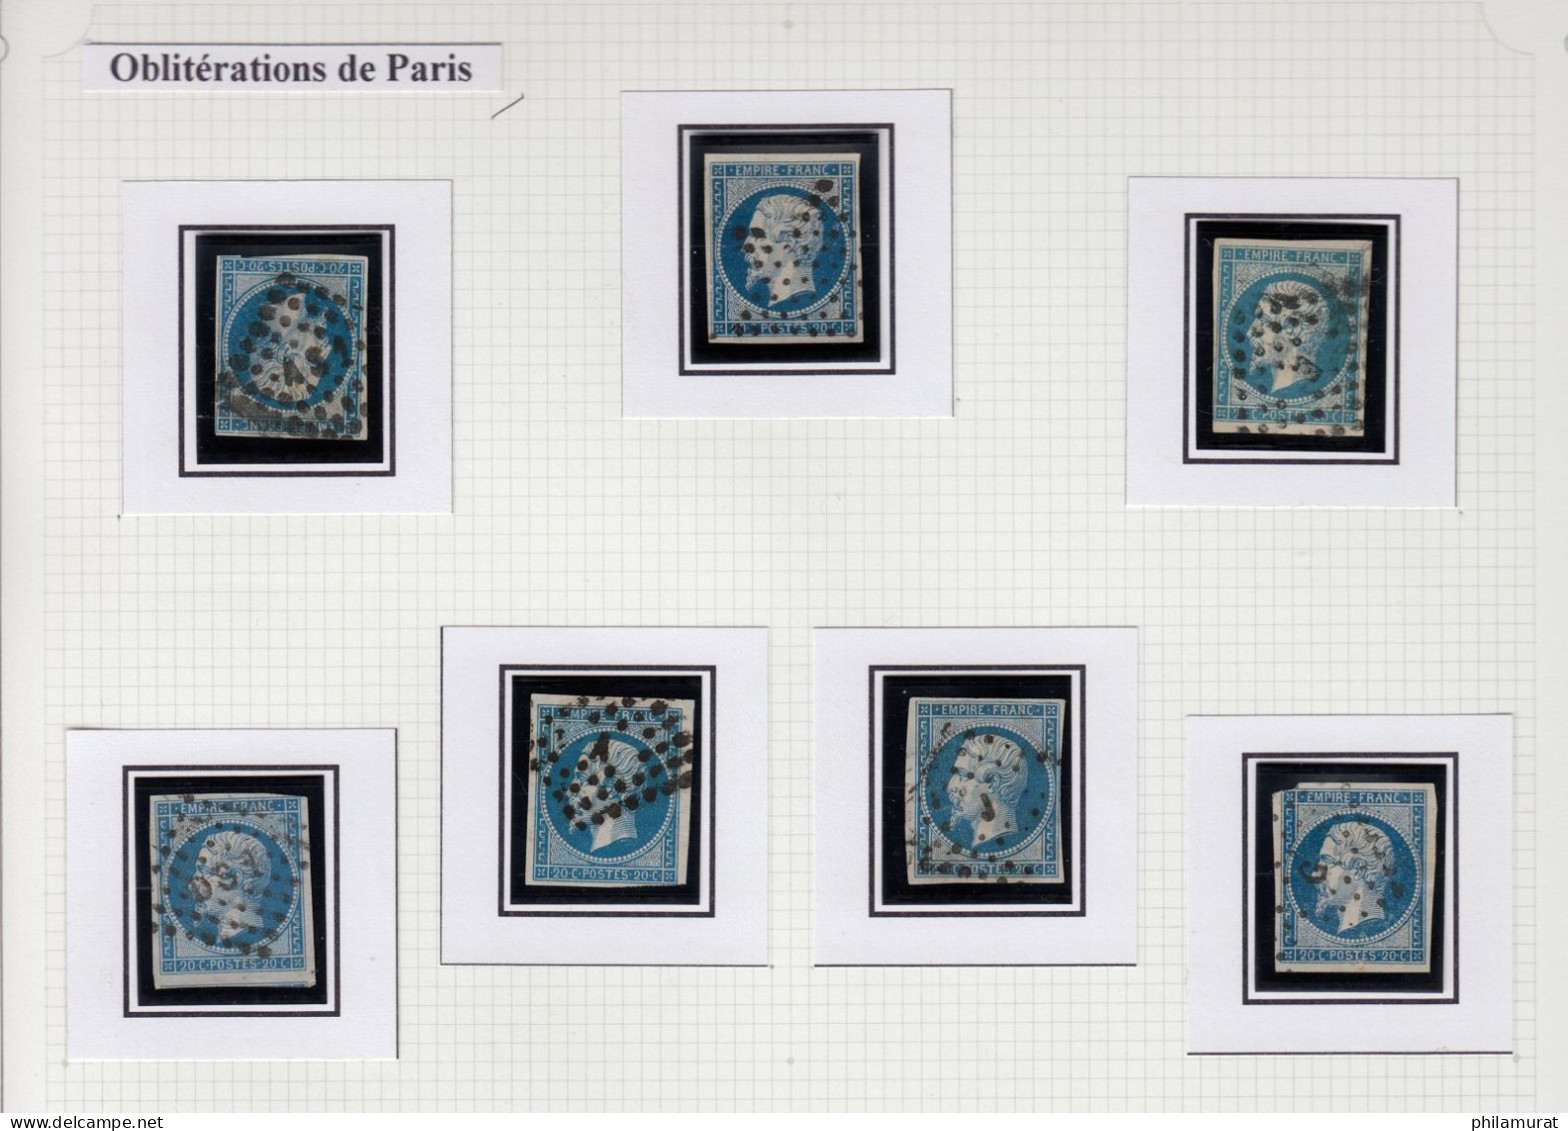 n°14, jolie collection Napoléon 20c bleu, de bonnes variétés et nuances